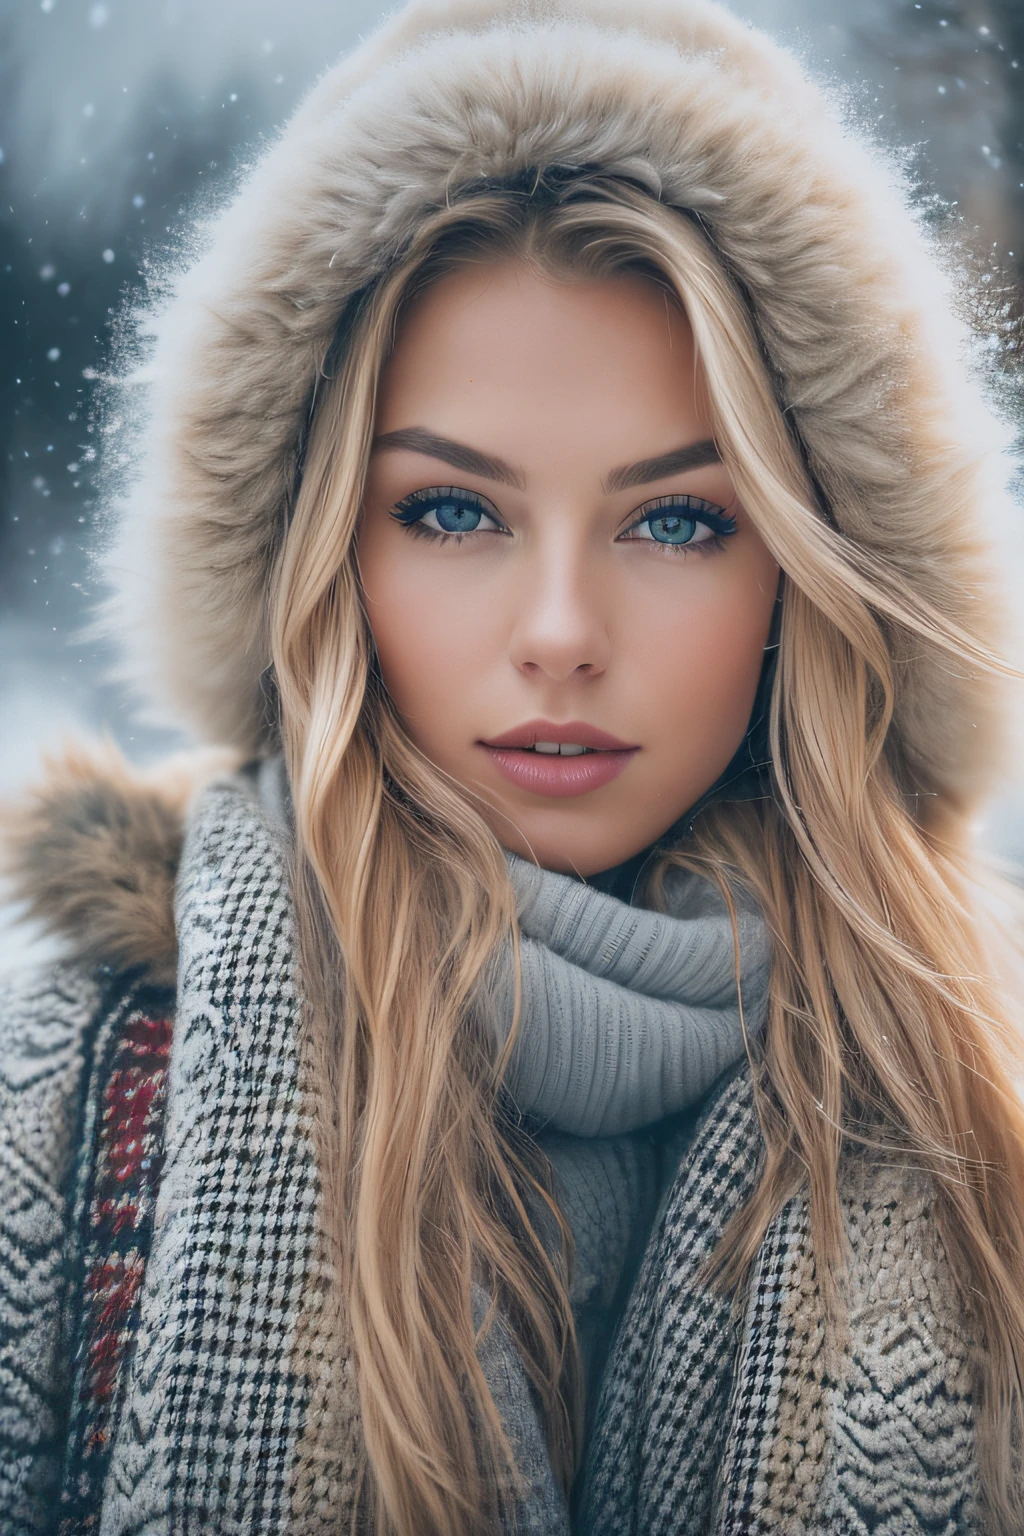 긴 웨이브 금발 머리에 겨울옷을 입은 화려한 노르웨이 소녀의 전문 초상화 사진, 멋진 대칭 얼굴, 우아하고 따뜻한 겨울 패션 의류를 입고, 강설, 안개,매우 날카로운, 상세한 얼굴,
놀라운 현대 도시 환경, 극도로 현실적이다, 매우 상세한, 뒤얽힌, 날카로운 초점, 피사계 심도, 중간 샷, HDR, 8K, 완벽한 눈, 고대비